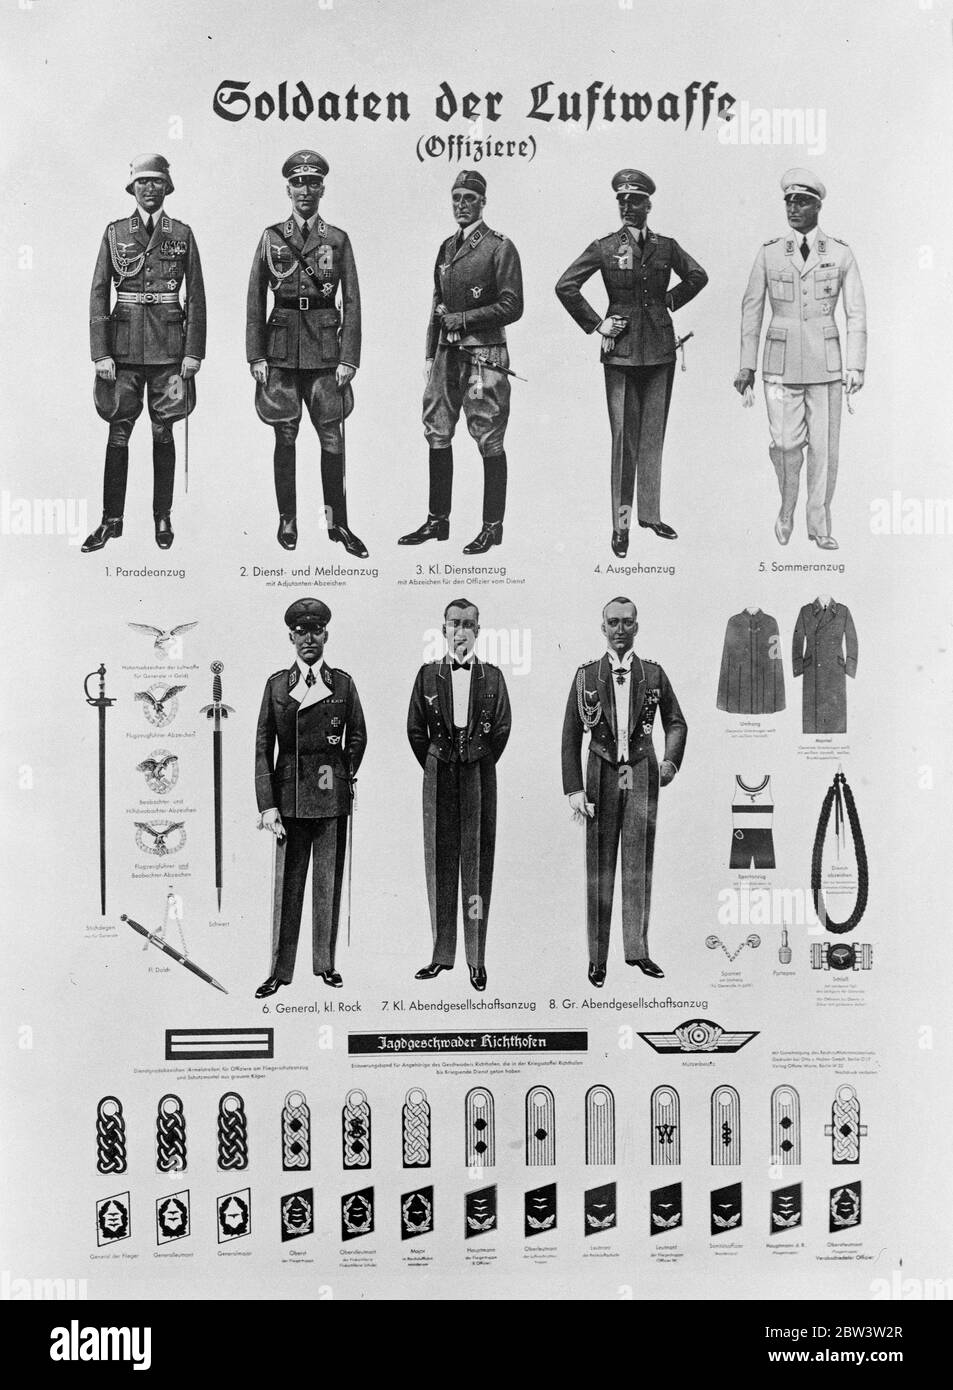 Deutschland zeigt ihre Luftwaffe. Plakate werden im ganzen Land verteilt, die die verschiedenen Uniformen von Offizieren und die Insignien getragen werden. August 1935 Stockfoto